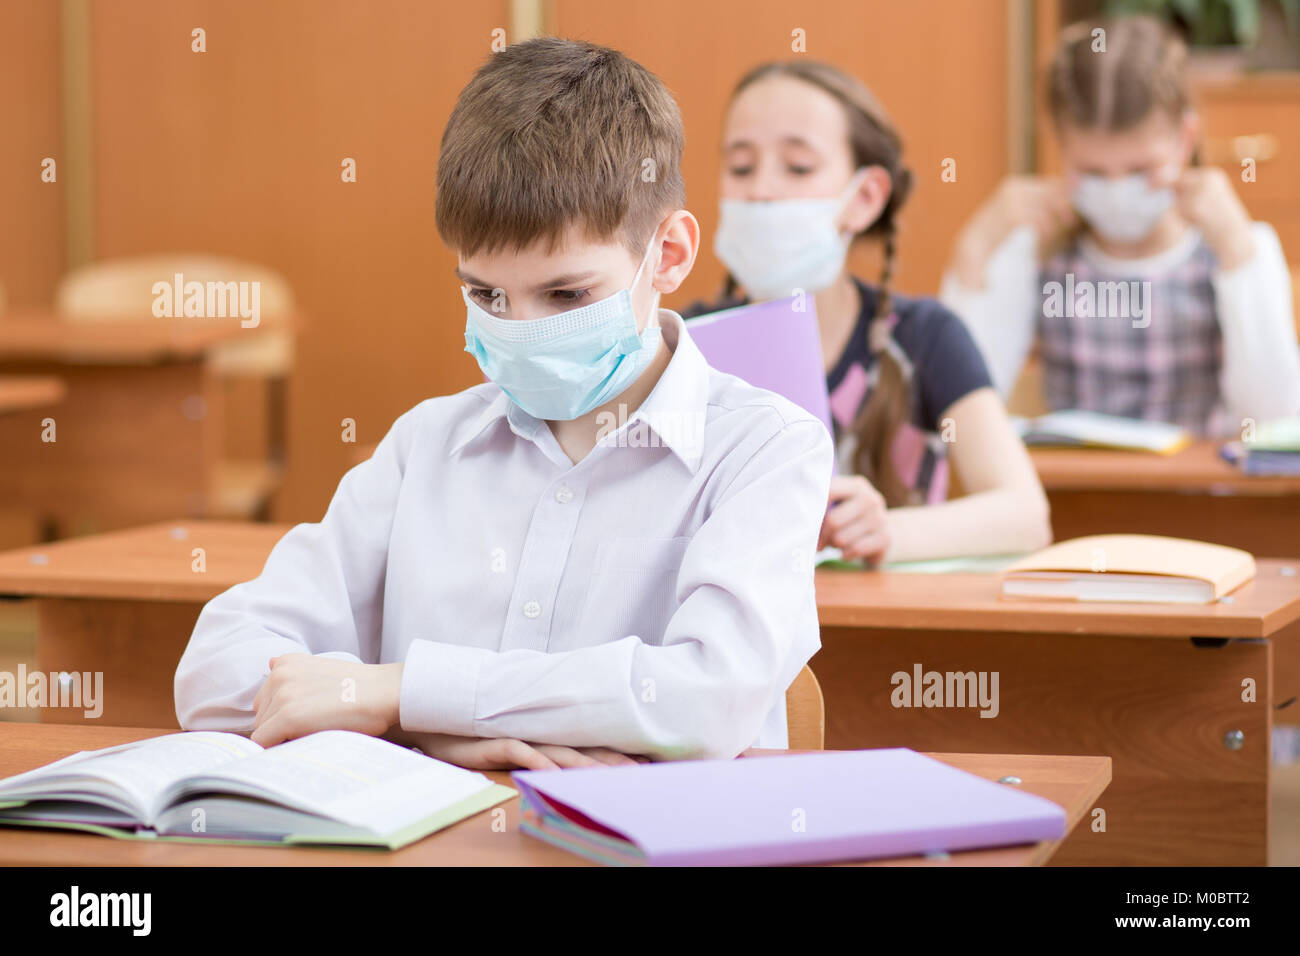 La scuola dei bambini con maschere di protezione contro virus influenzale a lezione in aula Foto Stock